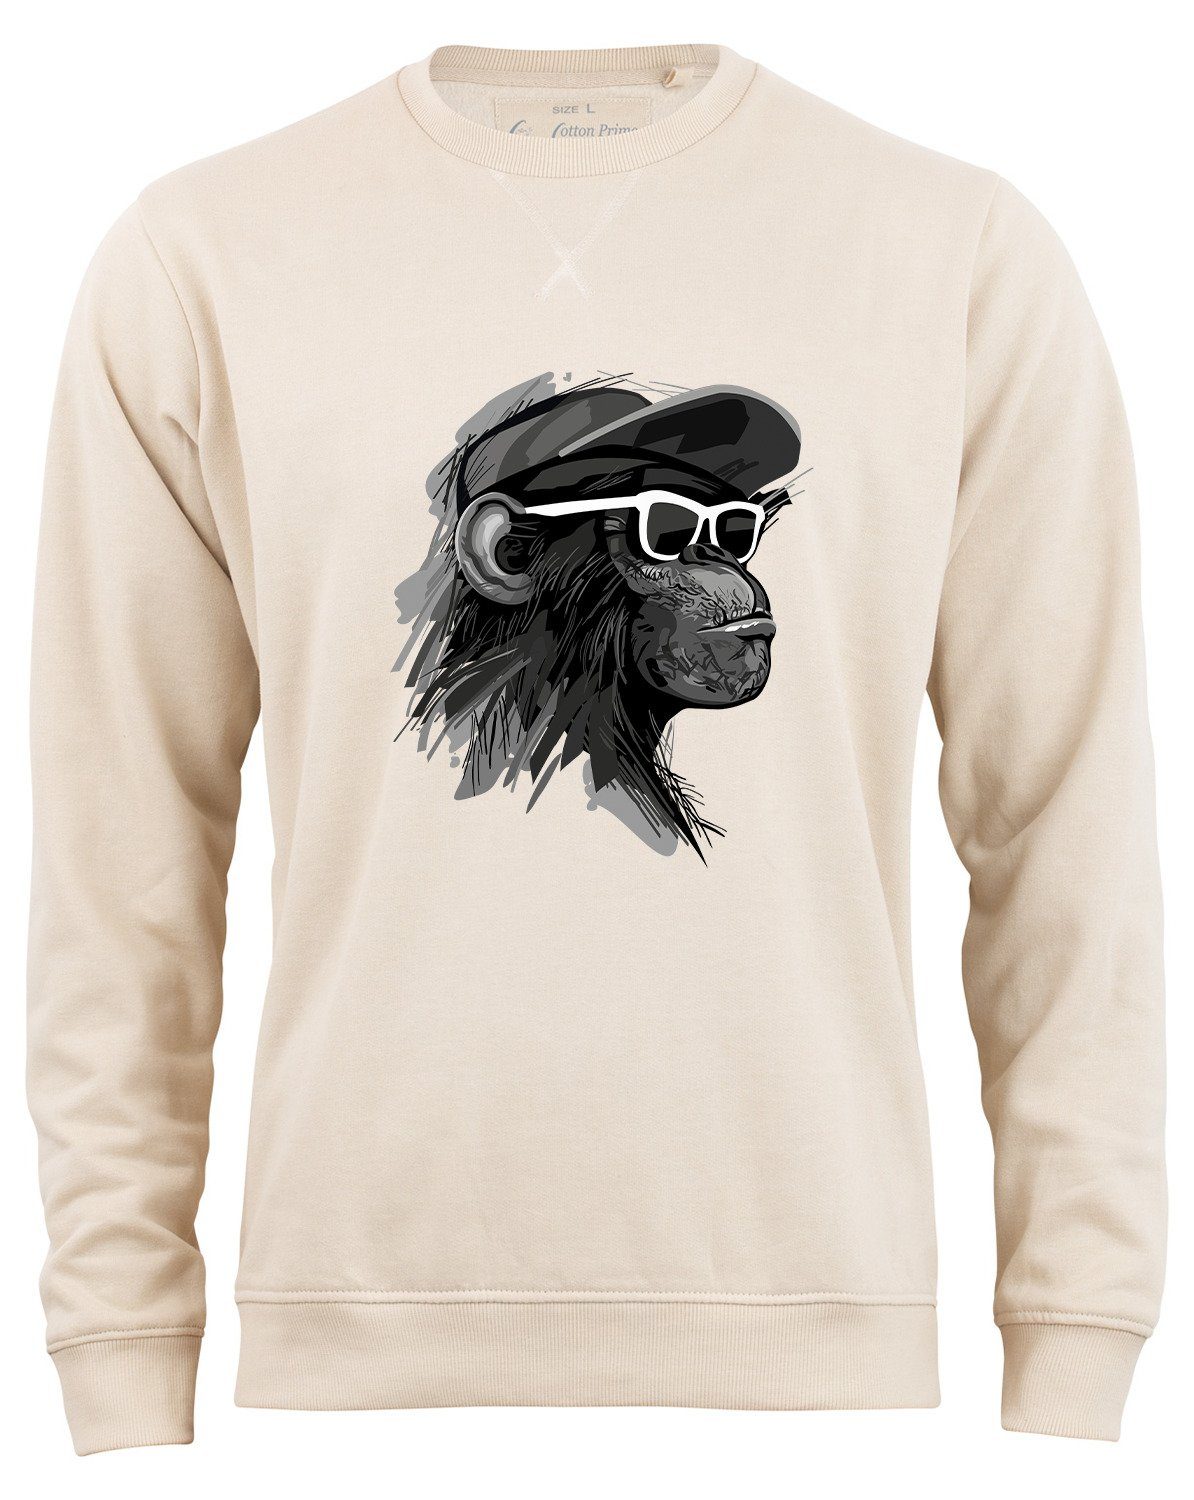 Cotton Prime® Sweatshirt weichem mit Innenfleece Cool mit Beige Brille Monkey